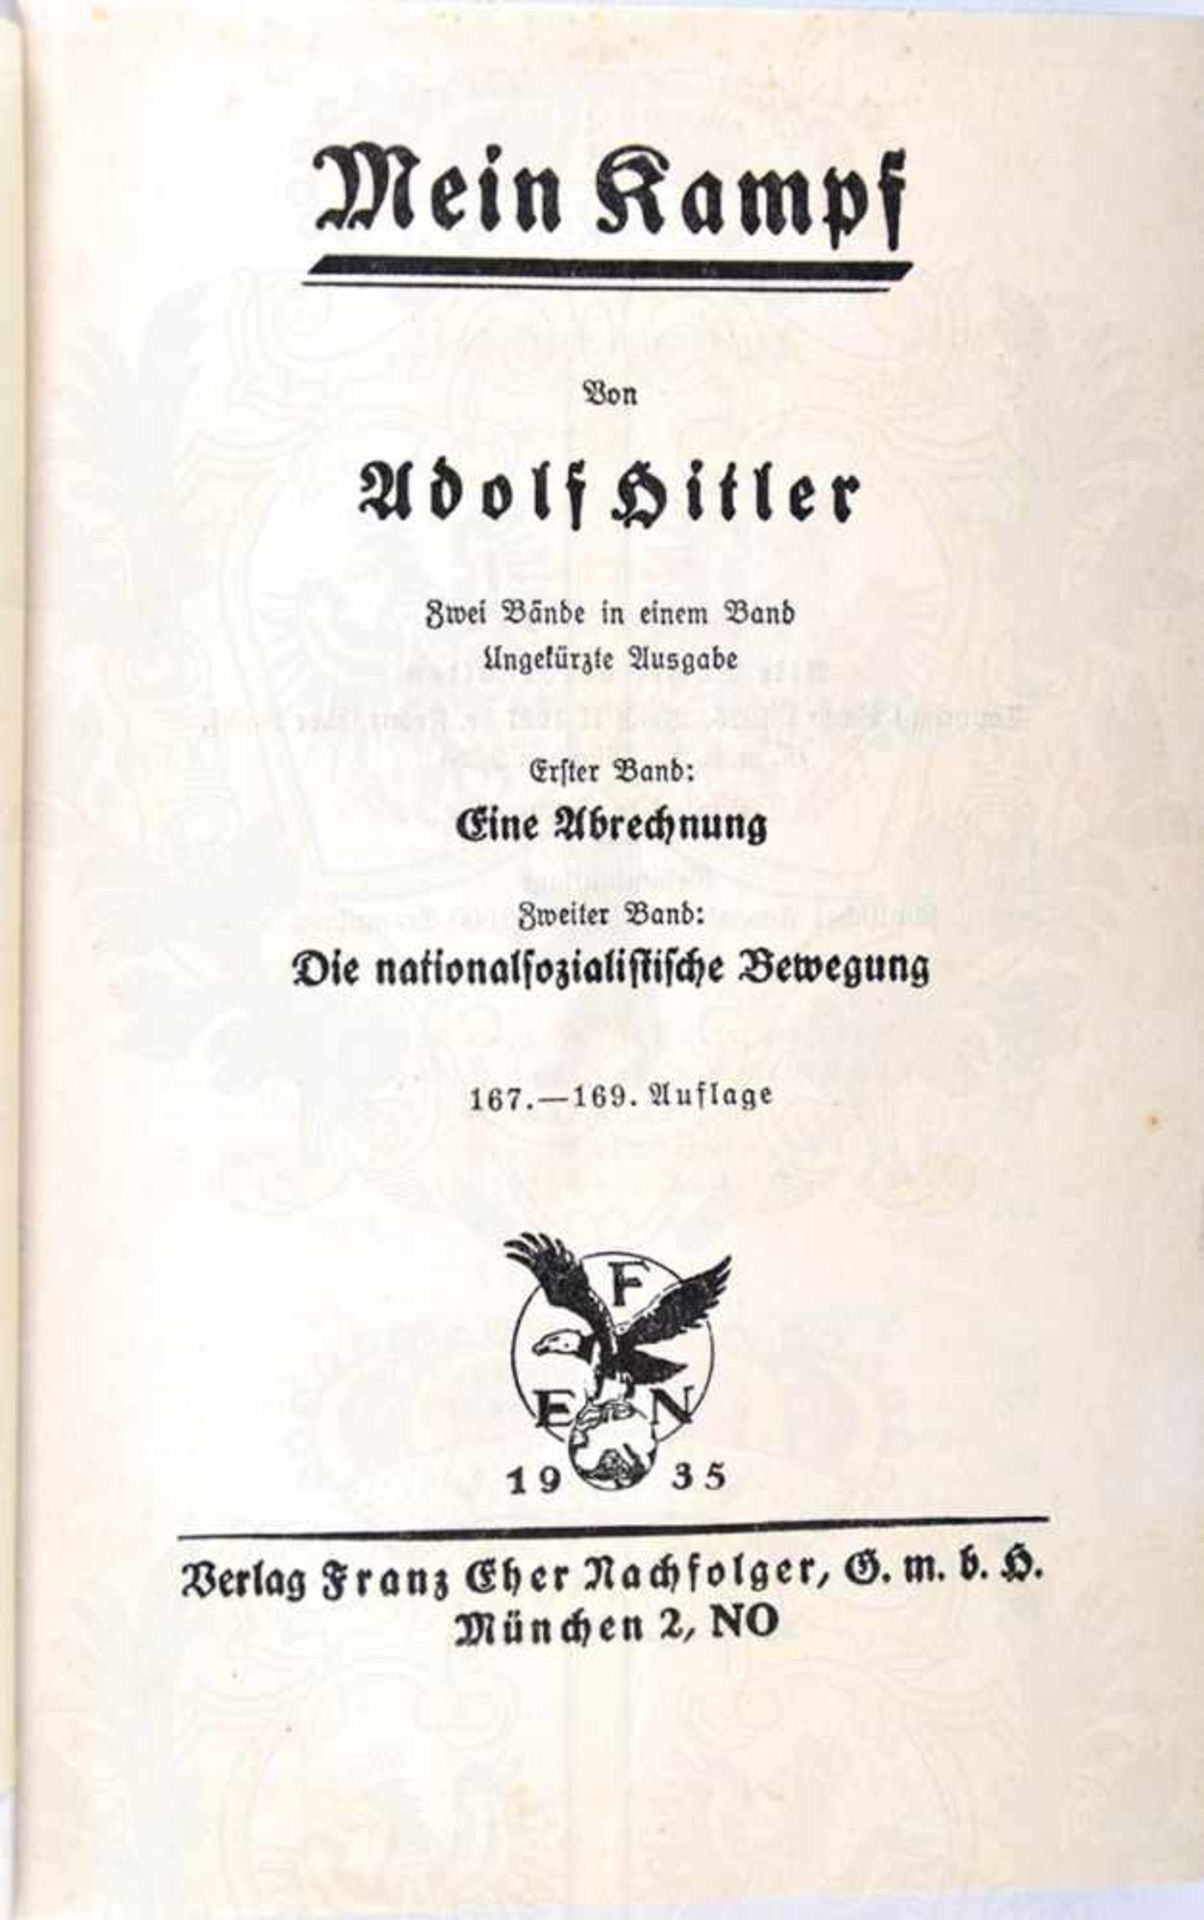 MEIN KAMPF, Adolf Hitler, Volksausgabe, Eher Verlag, 1935, Porträtbild, 781 S., Blanko-Vorsatz - Bild 3 aus 3